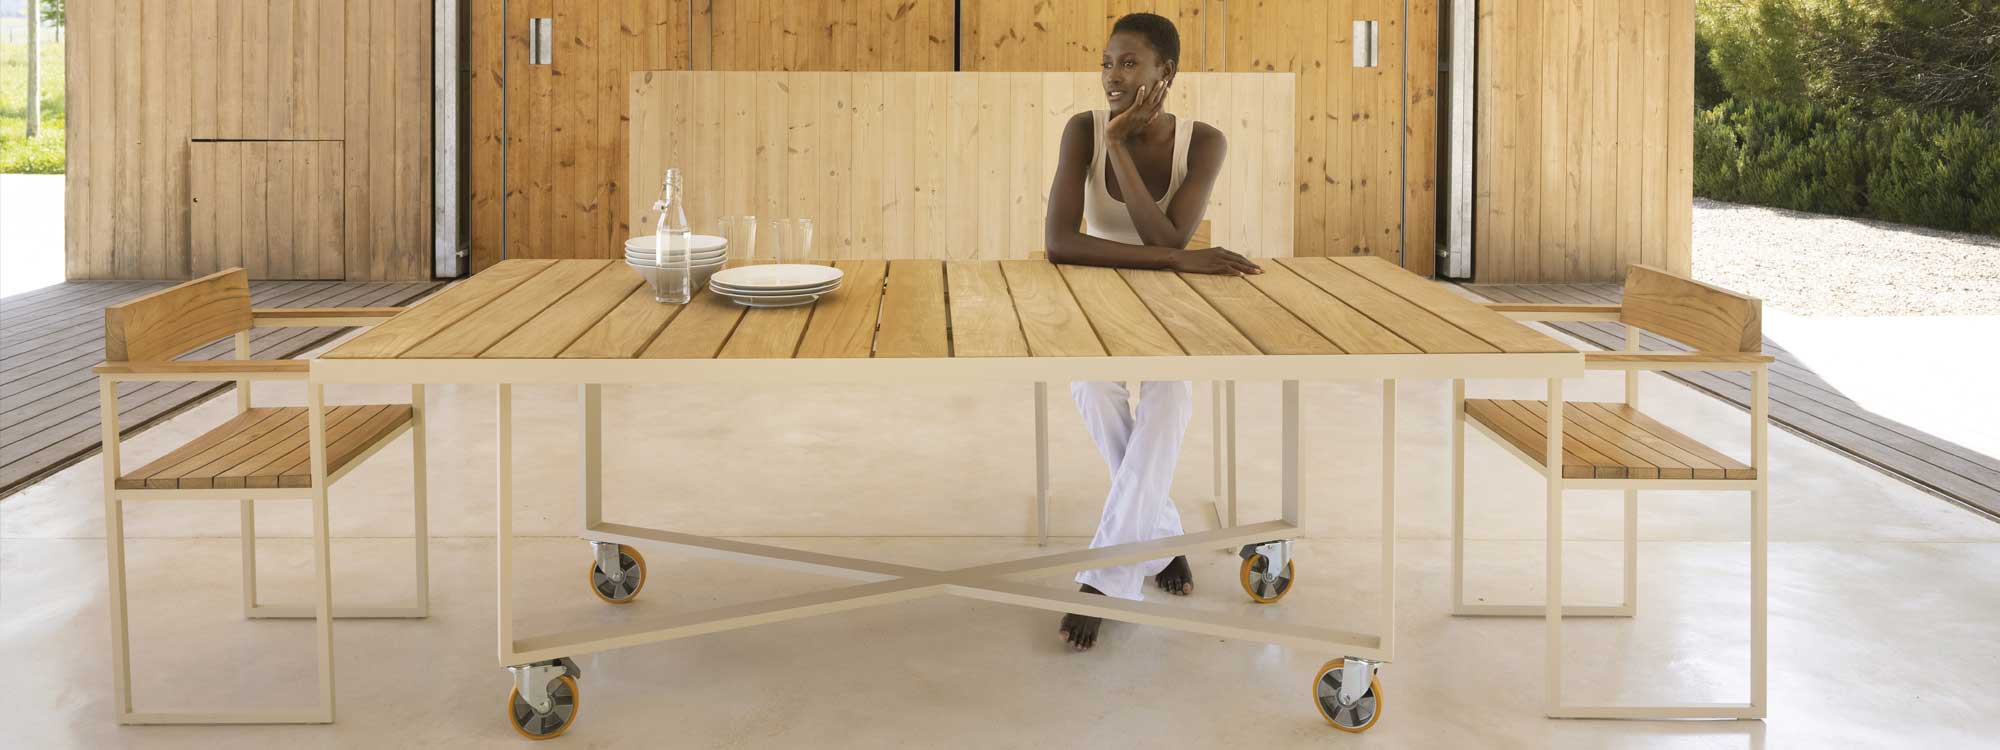 Image of woman sat at Vondom Vineyard modern garden table with wheels, inside a minimalist garden room